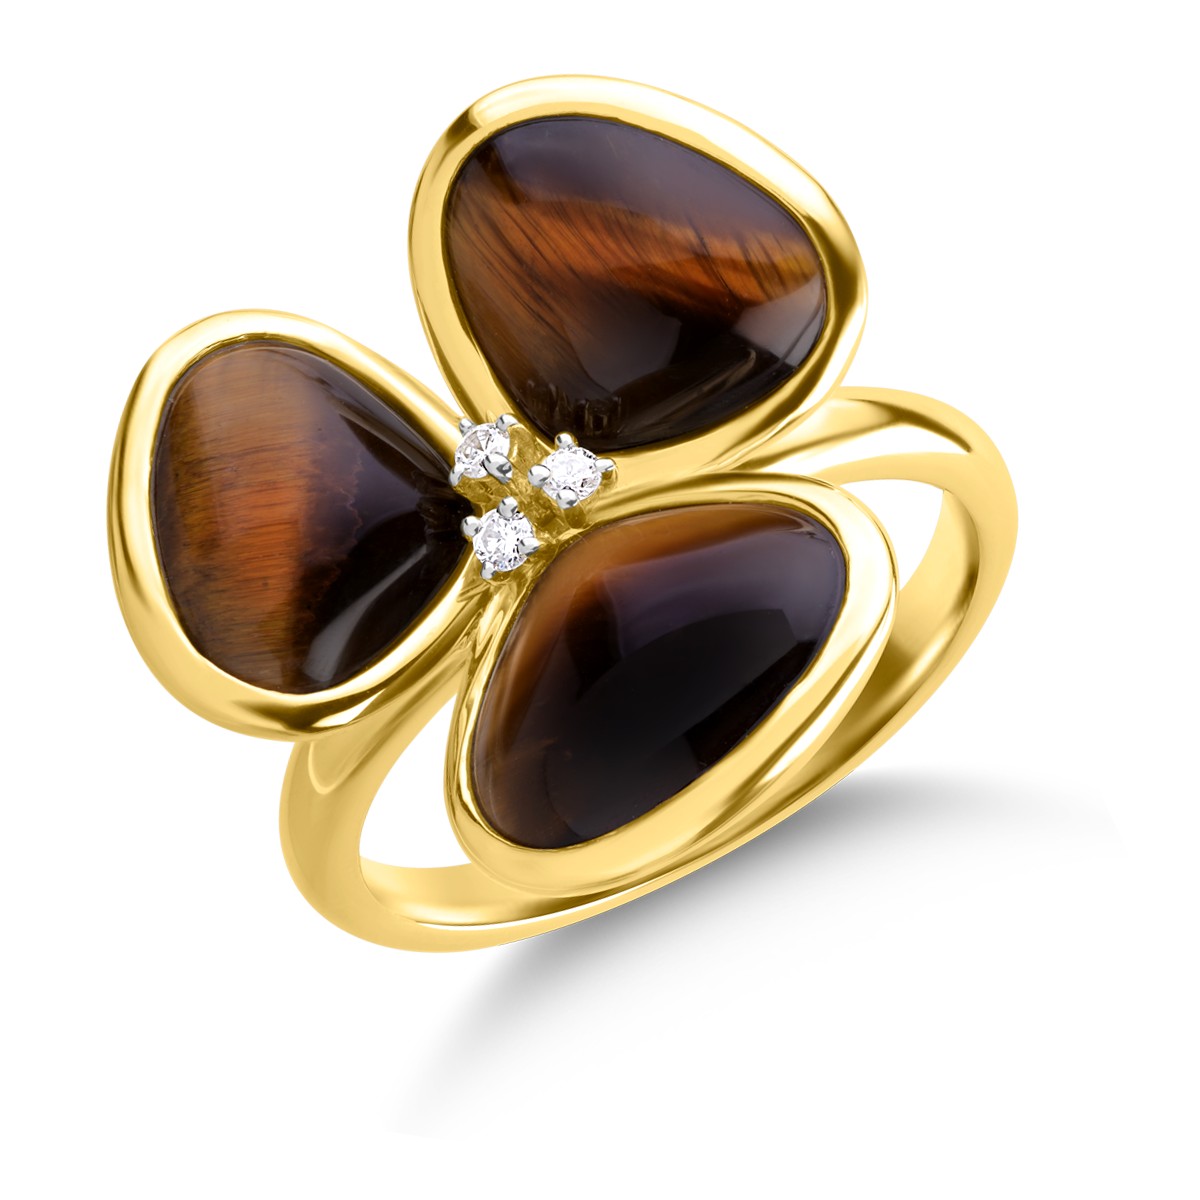 Gyűrű 18K-os sárga aranyból 7,59ct tigrisszemmel (kvarc féle, homályos) és 0,041ct gyémántokkal. Gramm: 4,86